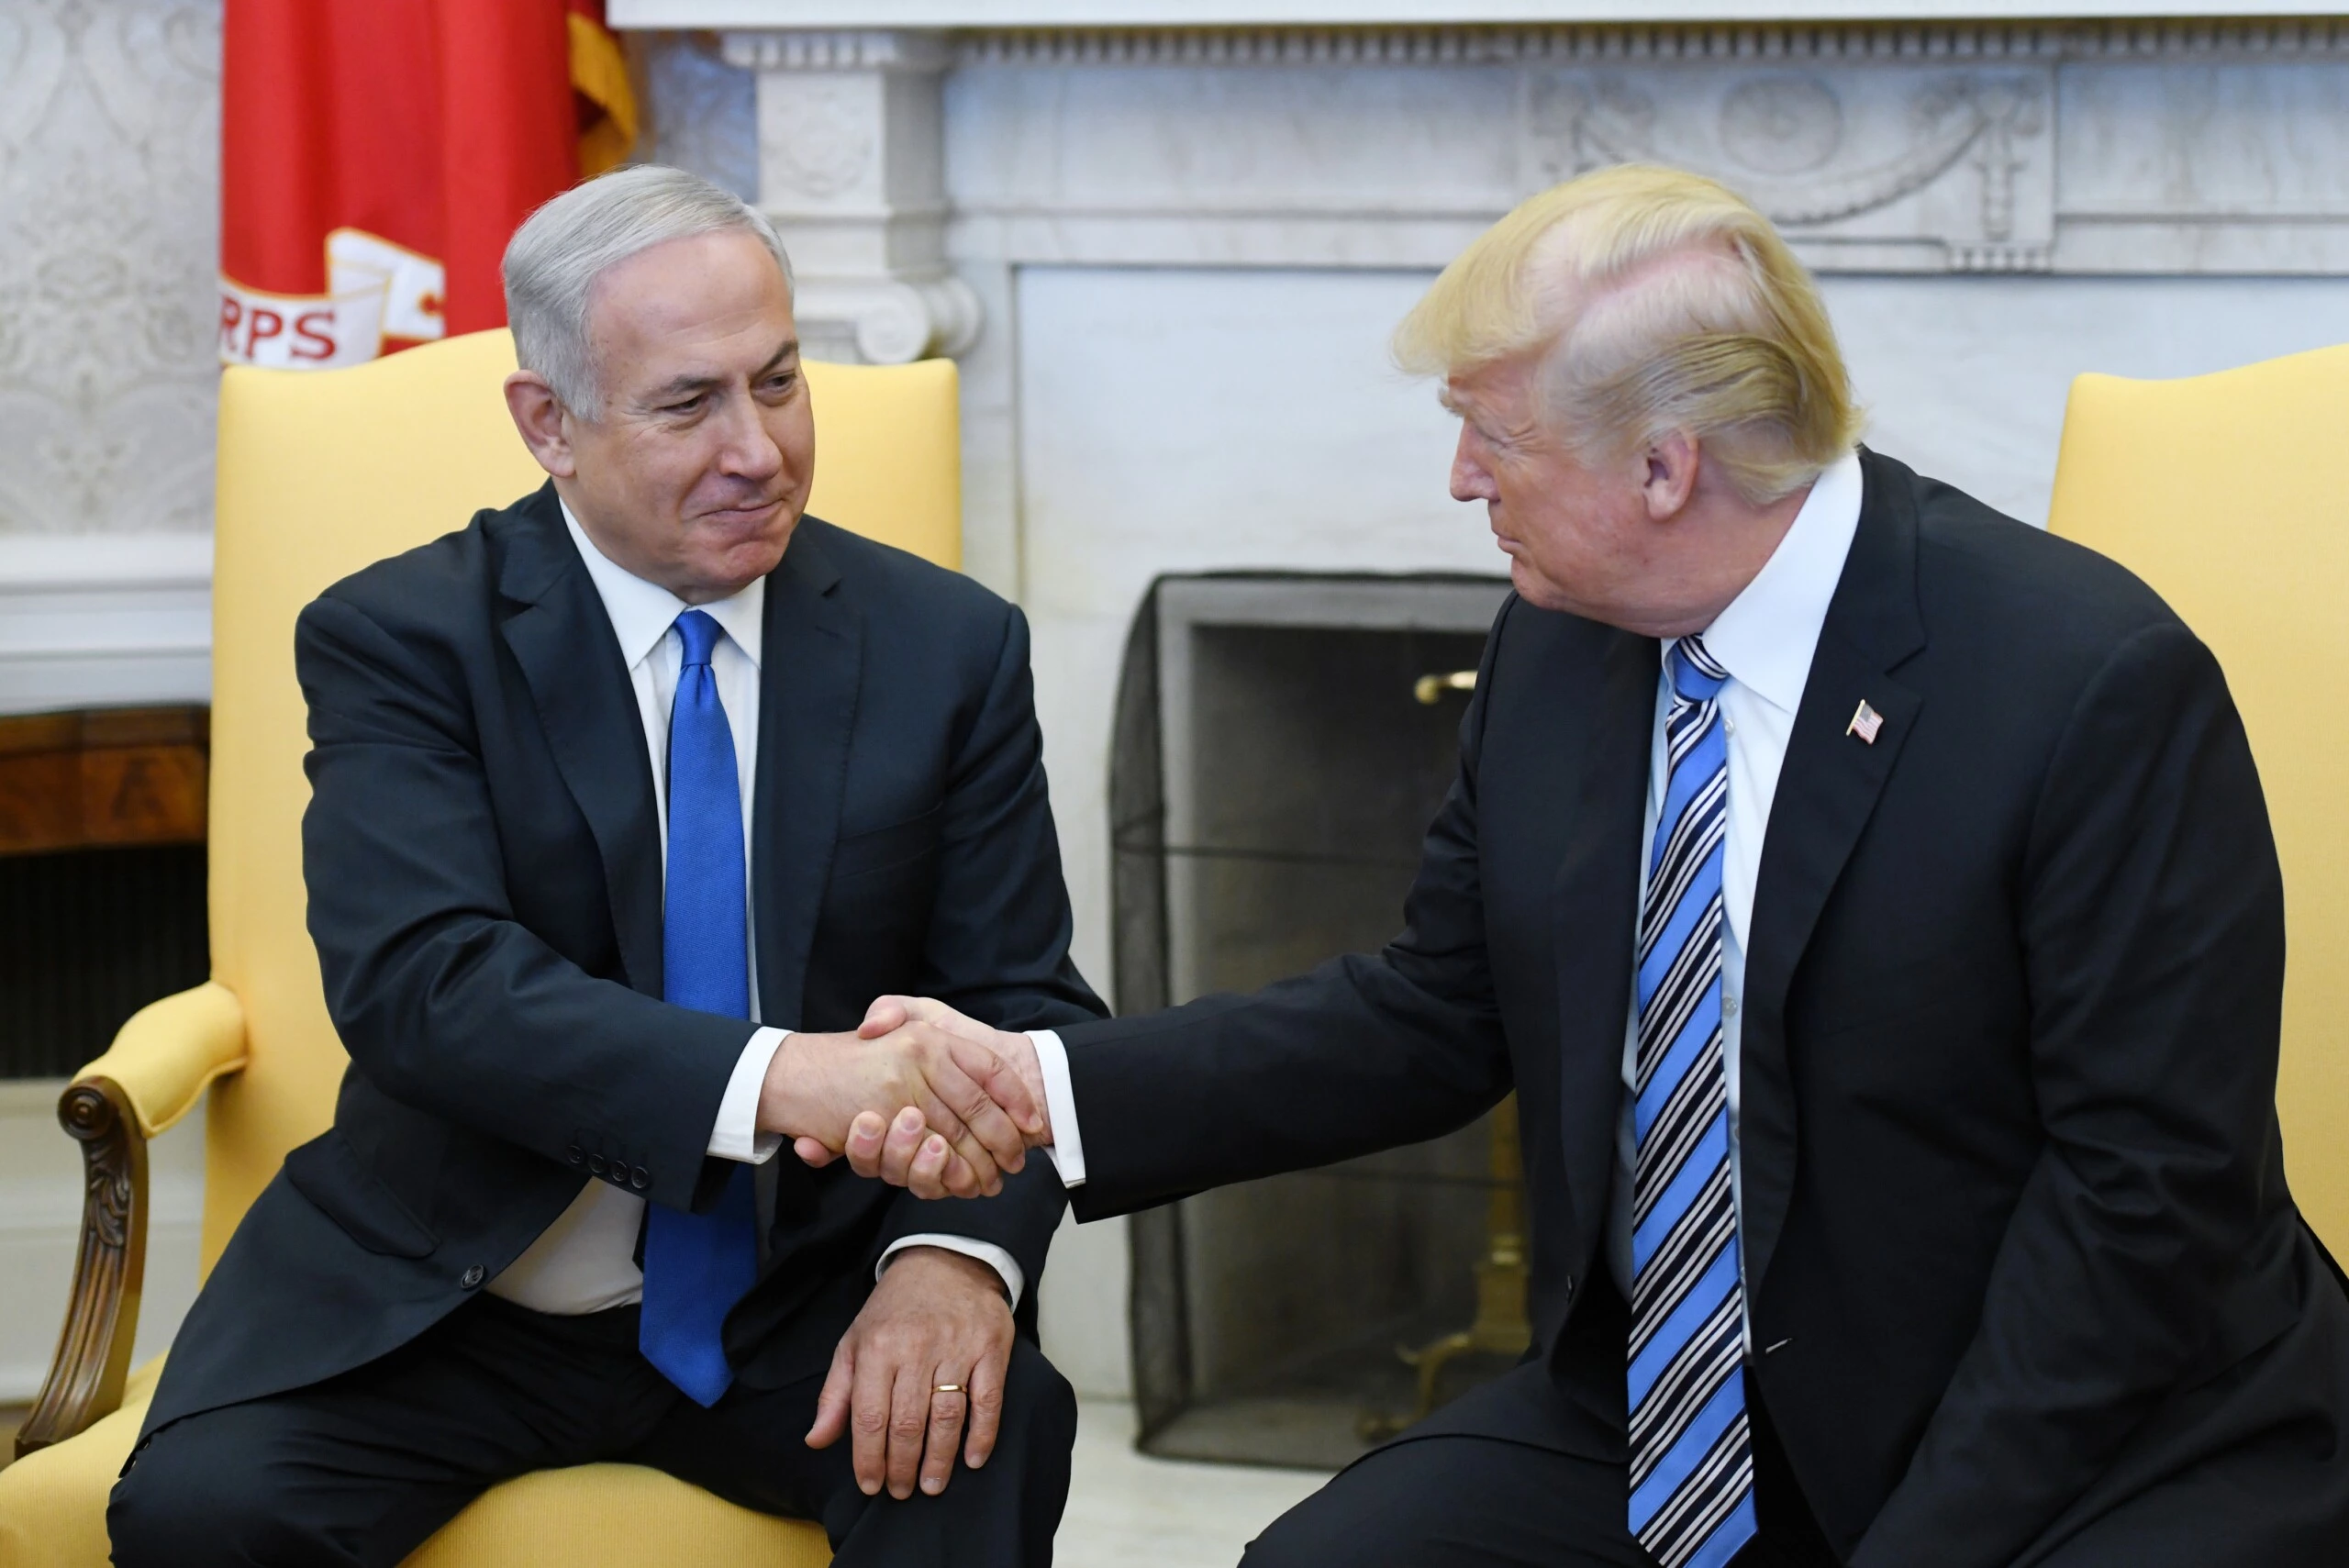 O presidente dos EUA Donald Trump aperta a mão do primeiro ministro de Israel, Benjamin Netanyahu, no Salão Oval da Casa Branca, no dia 5 de março.